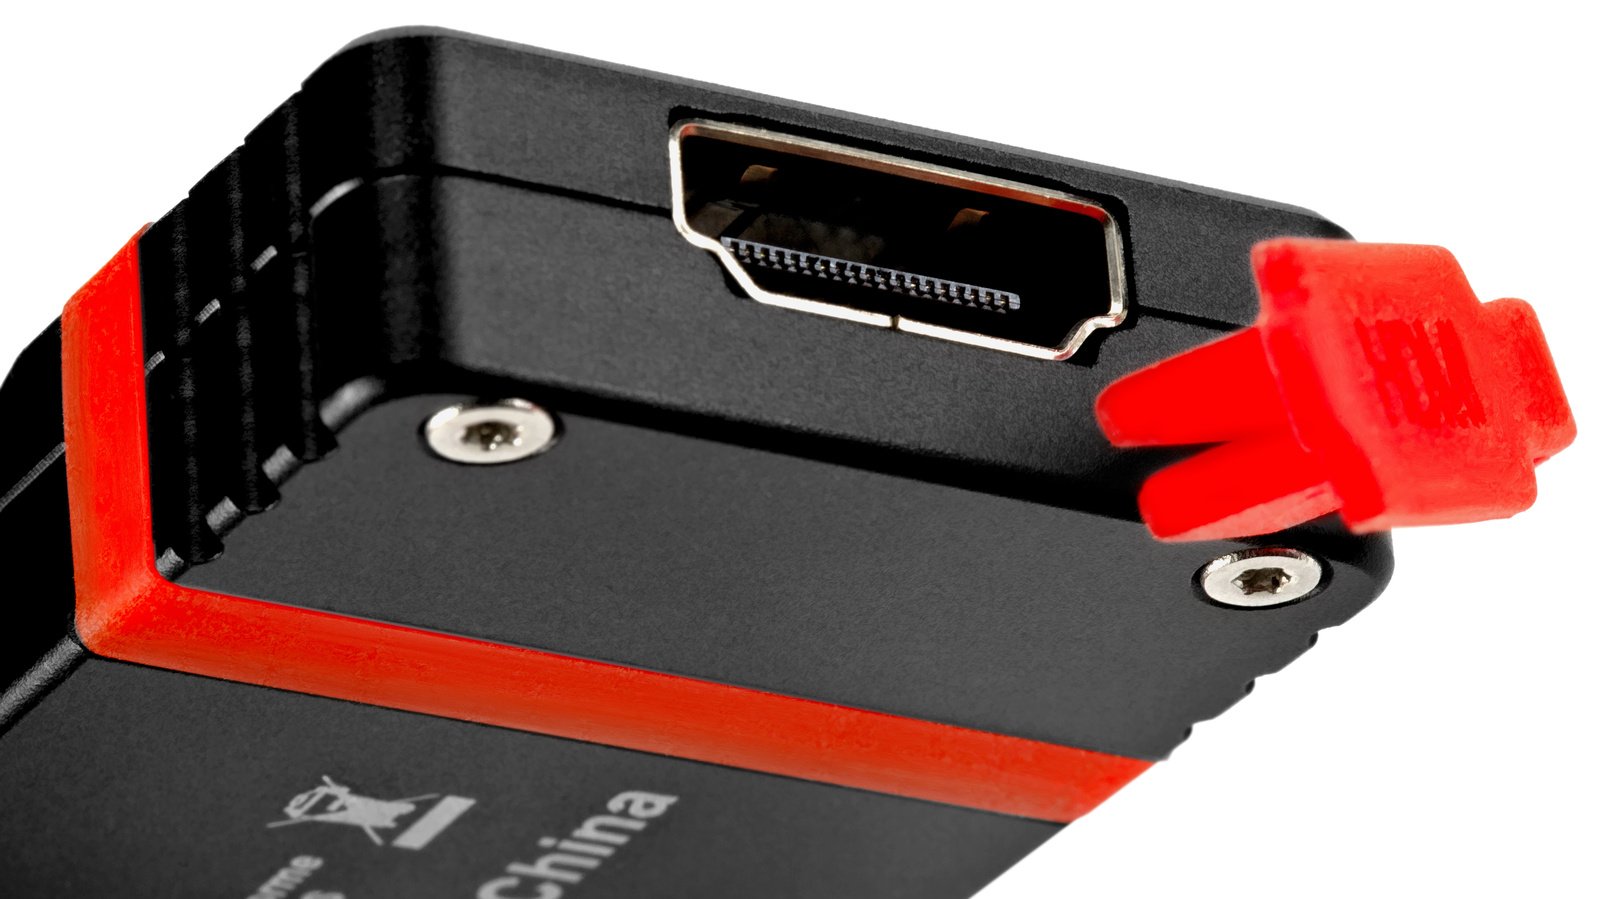 HDMI und USB sind hinter Gummiabdeckungen geschützt.